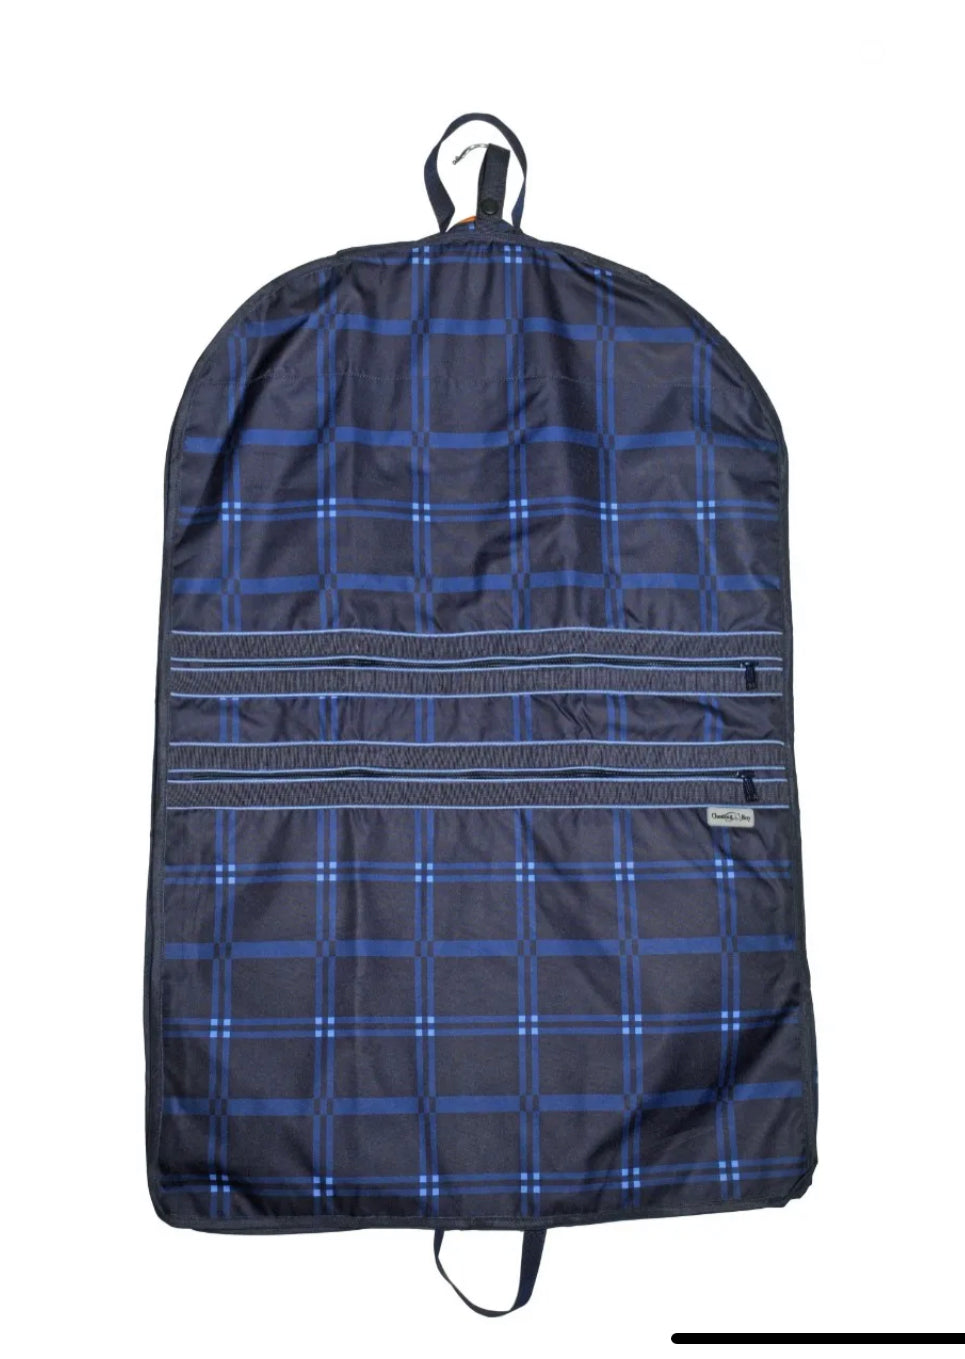 CB 3” Gusset Garment Bag